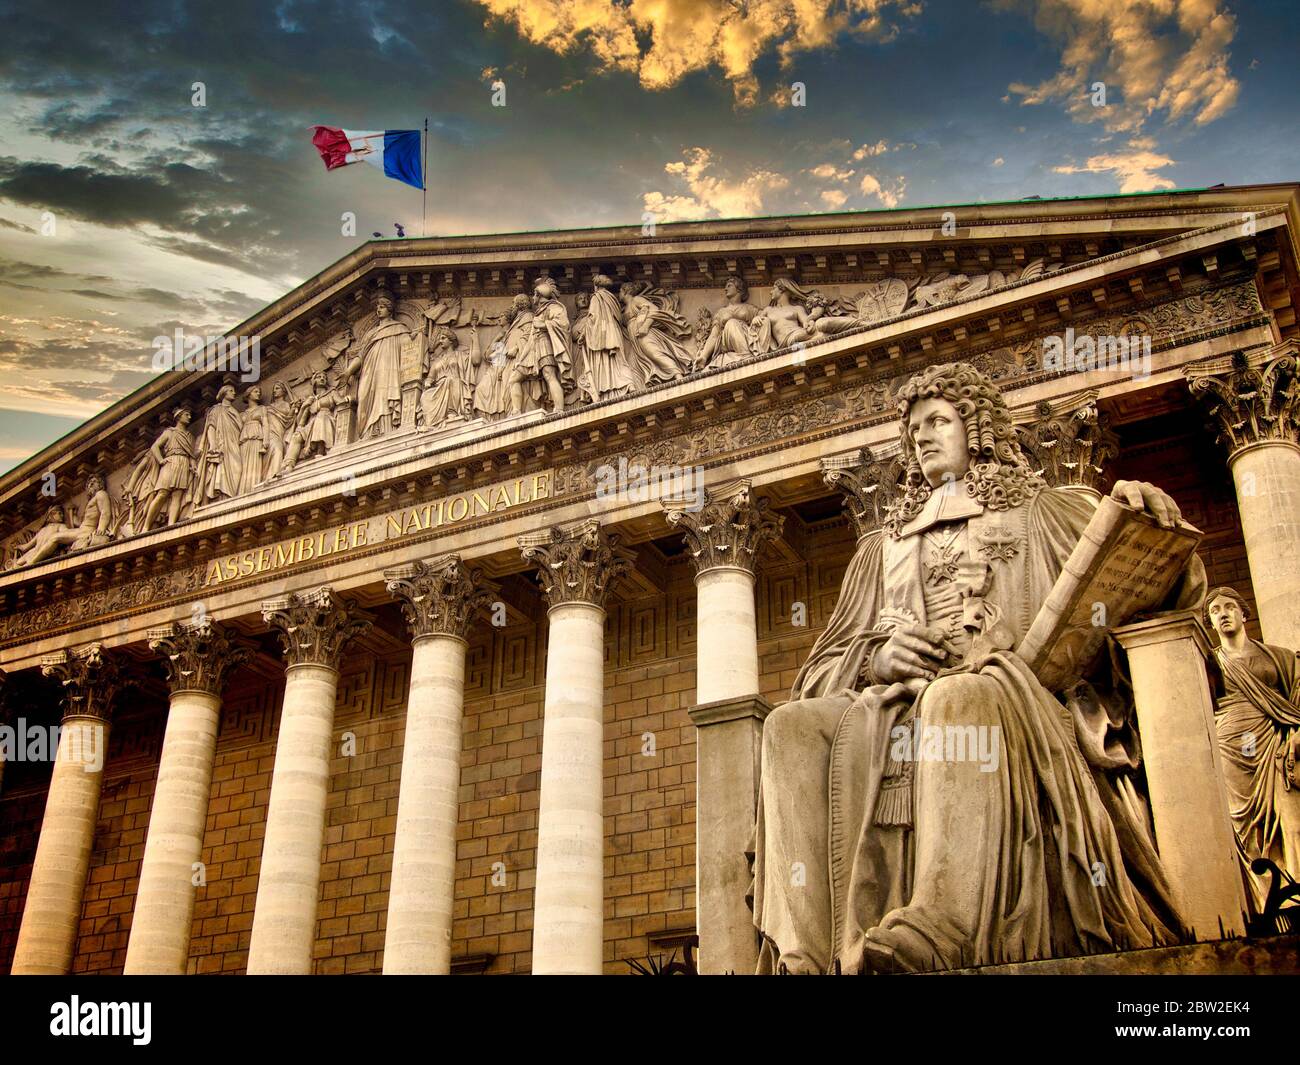 Palais Bourbon, National assembly, Paris, Ile-de-France, France Stock Photo